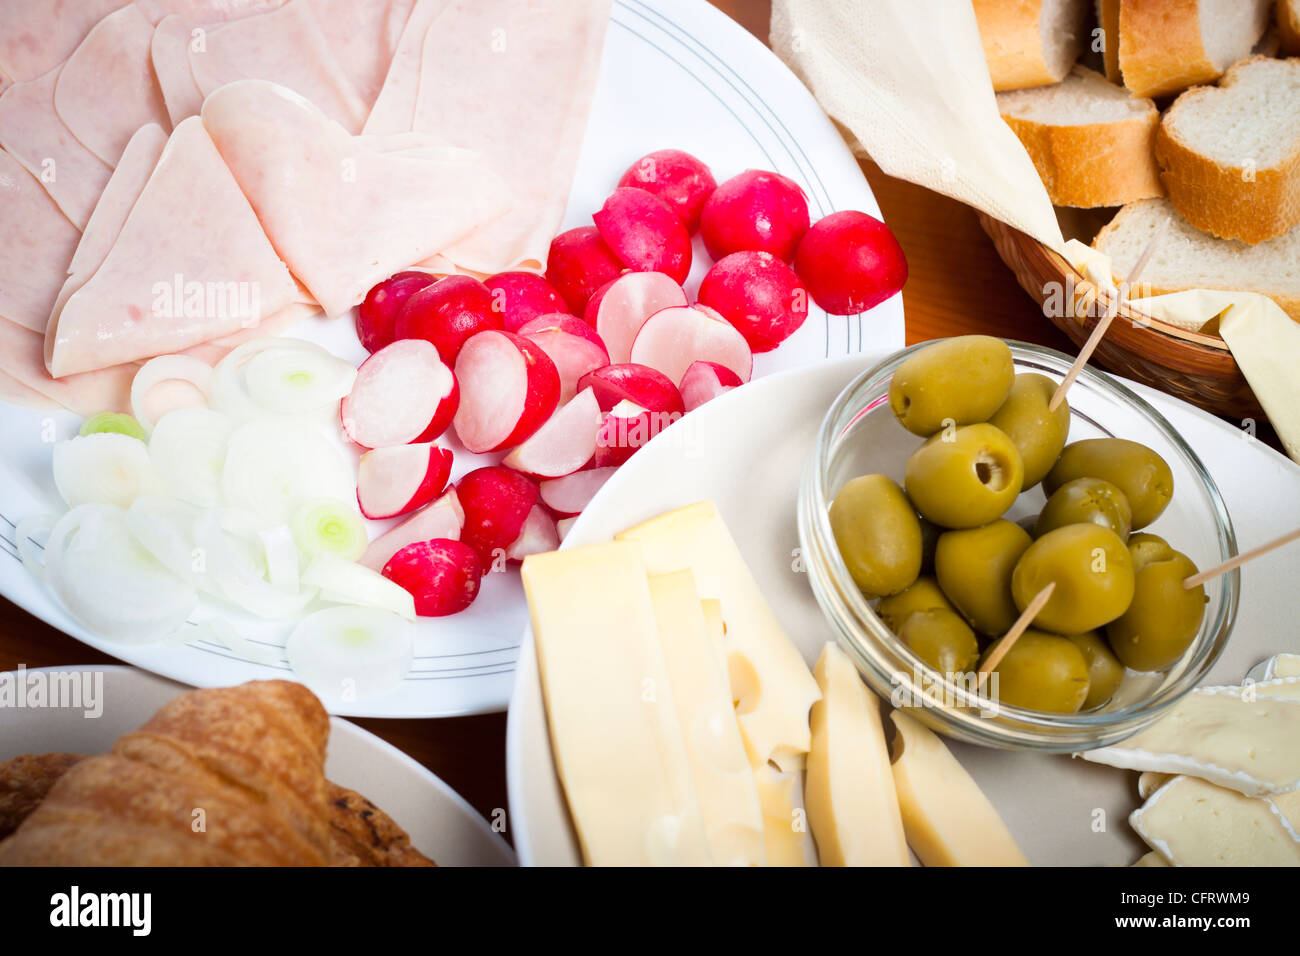 Dettaglio della tabella di cucina con le verdure fresche, prosciutto e formaggio. Foto Stock